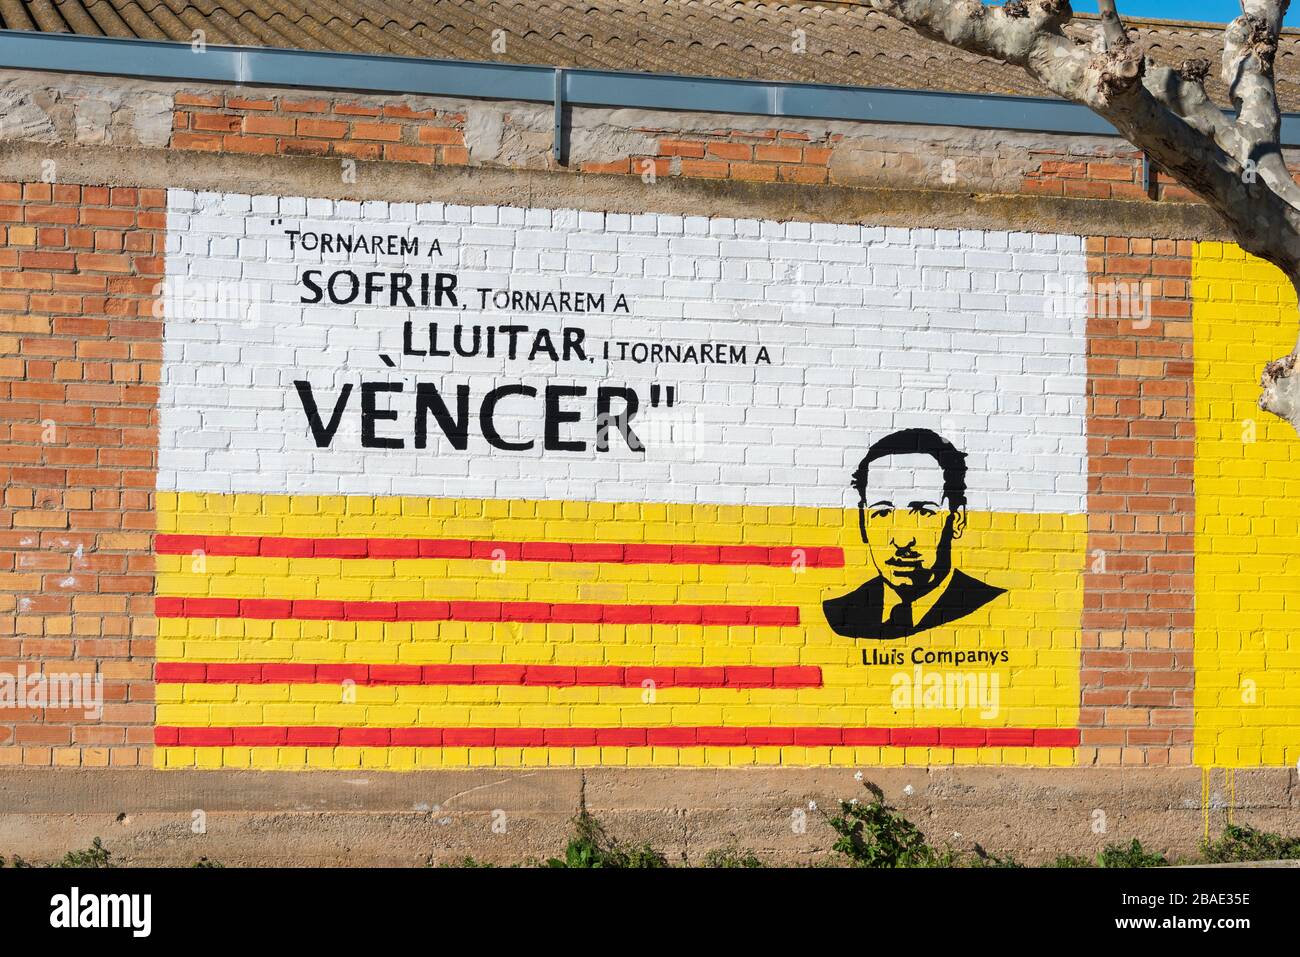 19 febbraio 2020 - Preixana. Graffiti che promuove il movimento separatista in Catalogna. Foto Stock